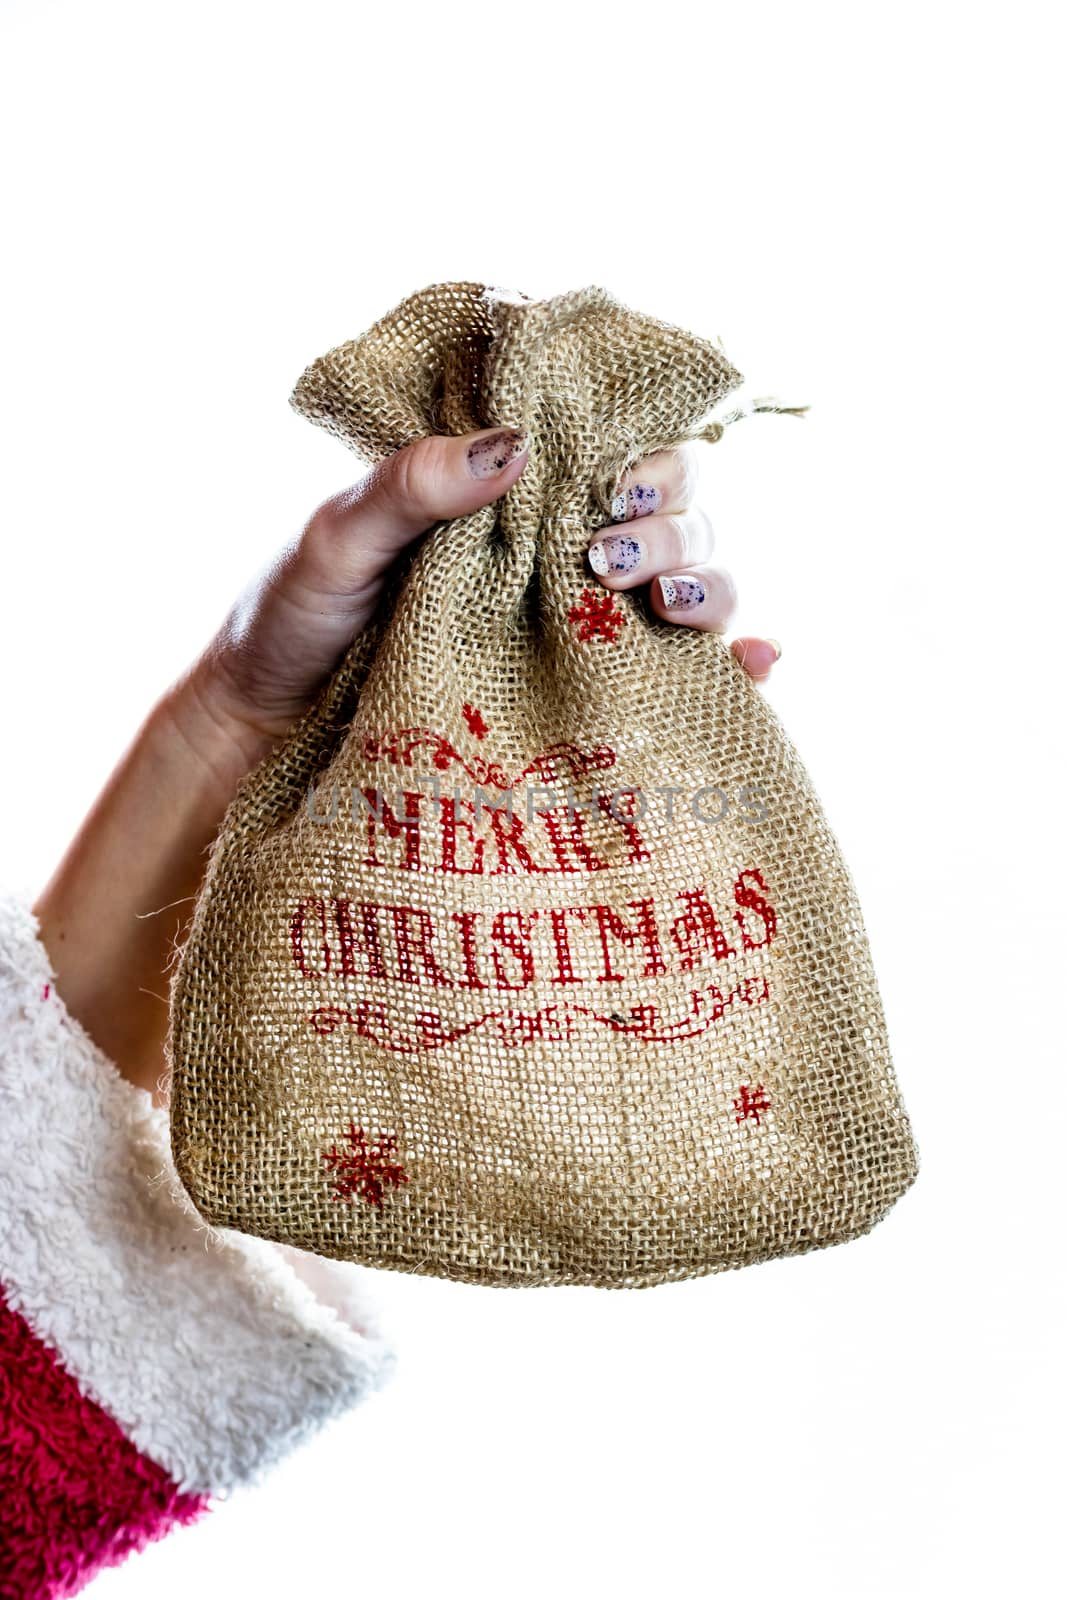 Hand holding Christmas burlap sack isolated on white background by vladispas